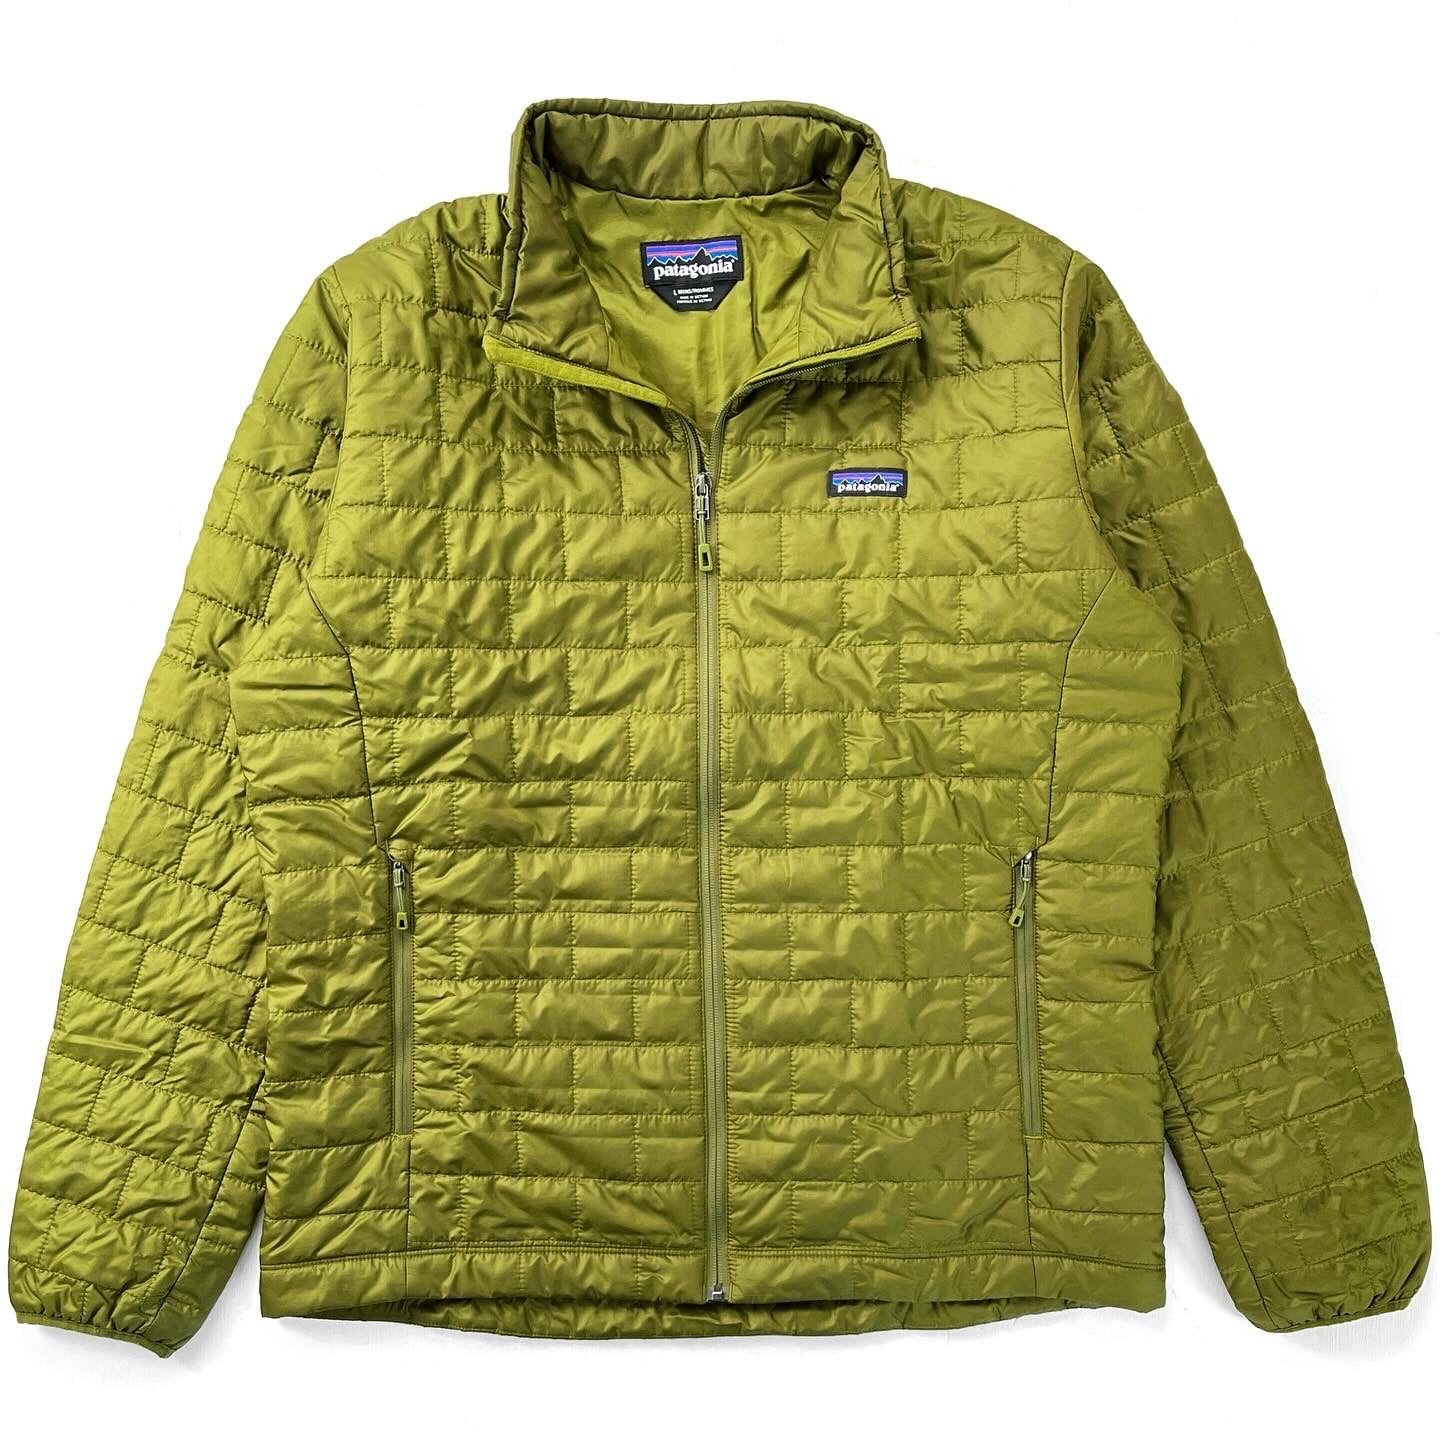 Patagonia - Men's Nano Puff Jacket - Nouveau Green w/Nouveau Green